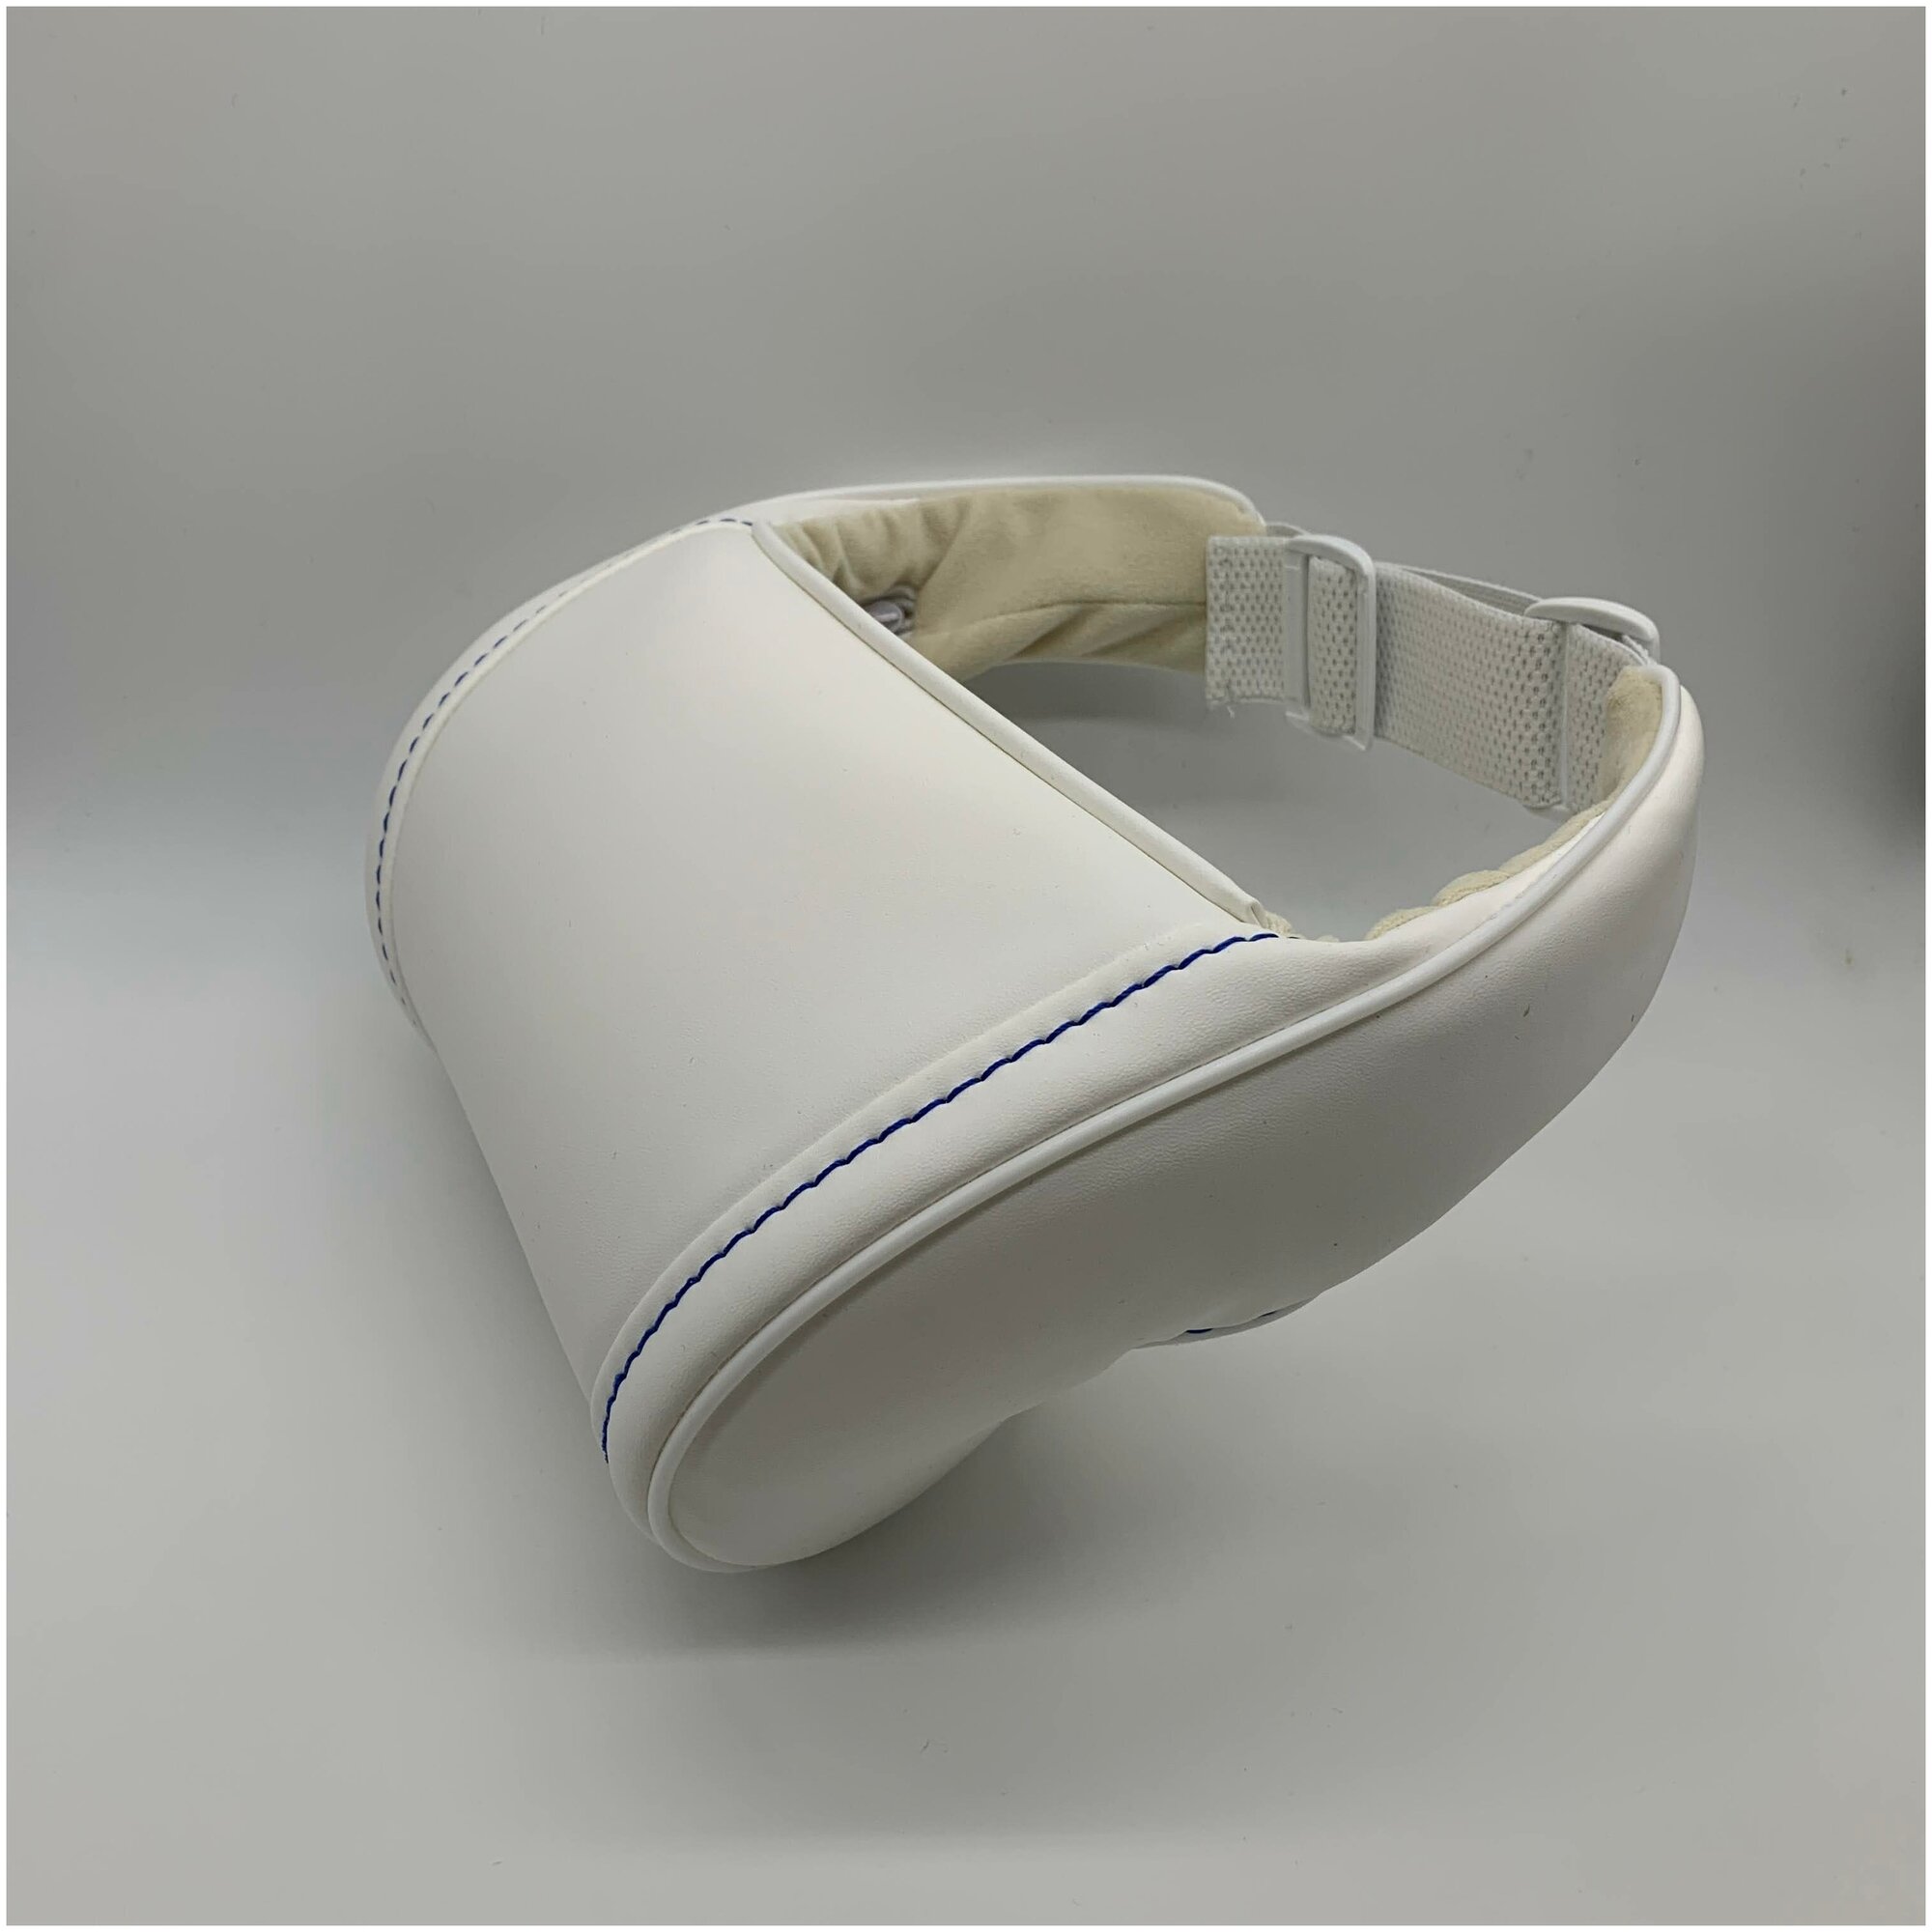 Белая автомобильная ортопедическая подушка для шеи на подголовник на сиденье. Синяя декоративная строчка. Экокожа премиум класса.